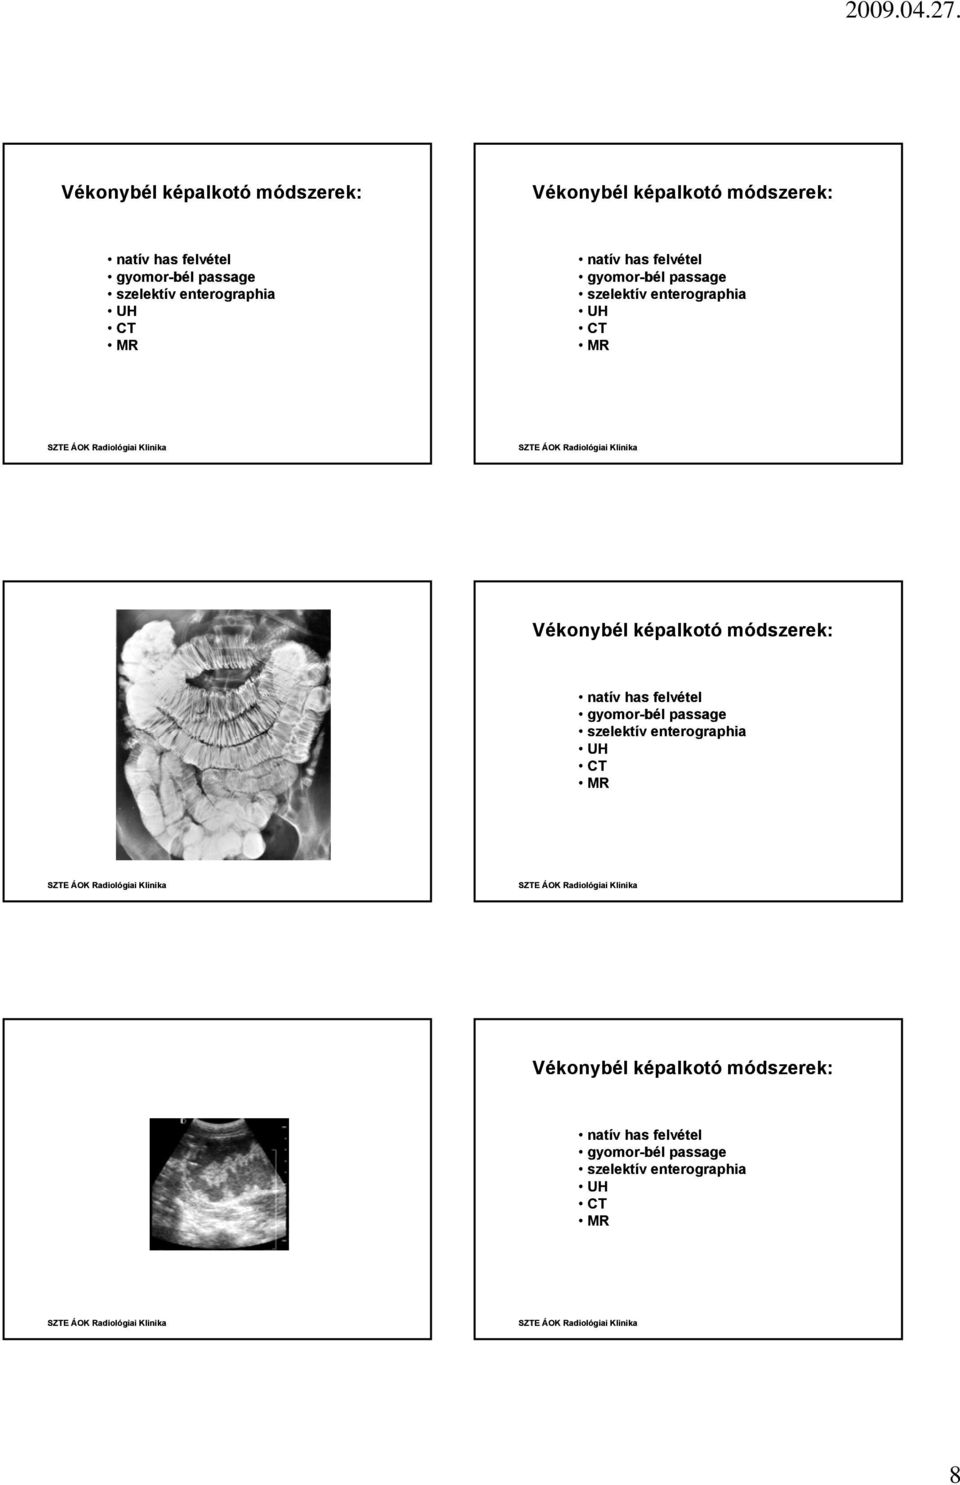 UH Vékonybél képalkotó módszerek: natív has felvétel gyomor-bél passage szelektív enterographia